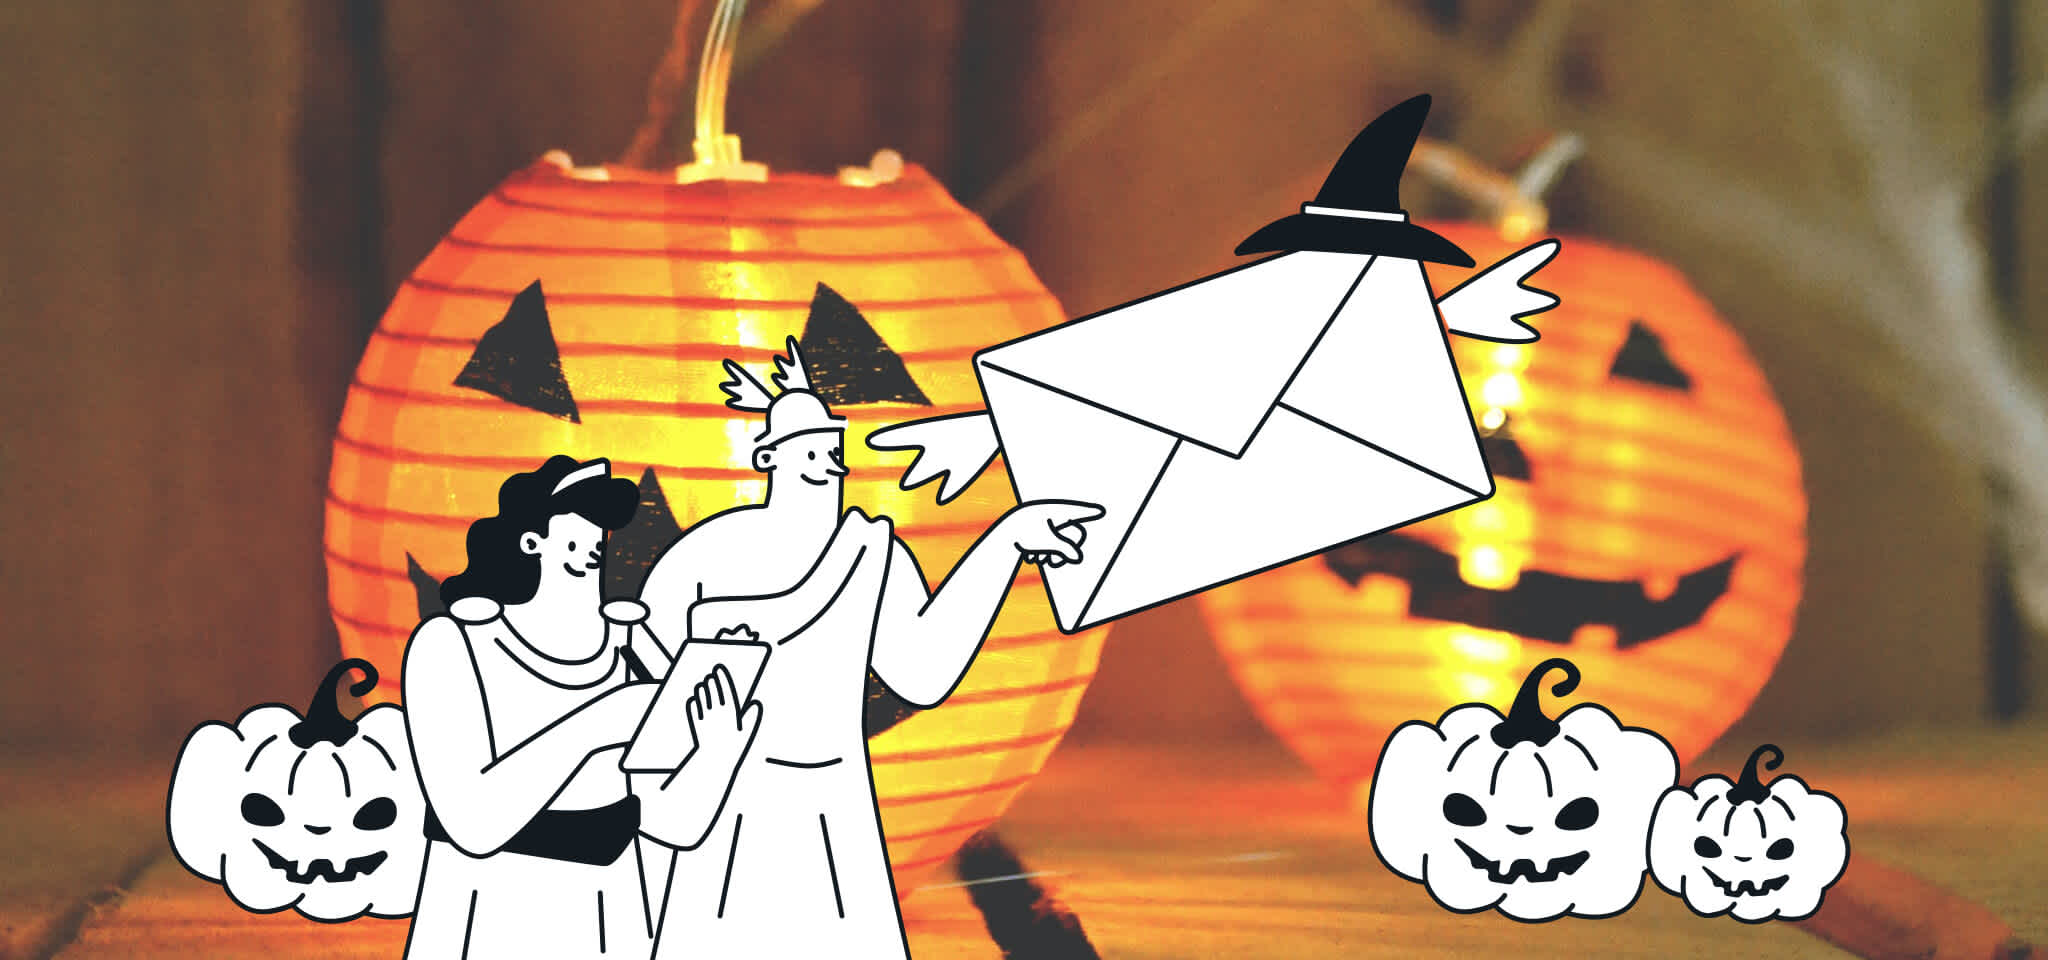 Hermes und eine Göttin zeigen auf einen gruseligen Umschlag vor gruseligen Kürbissen